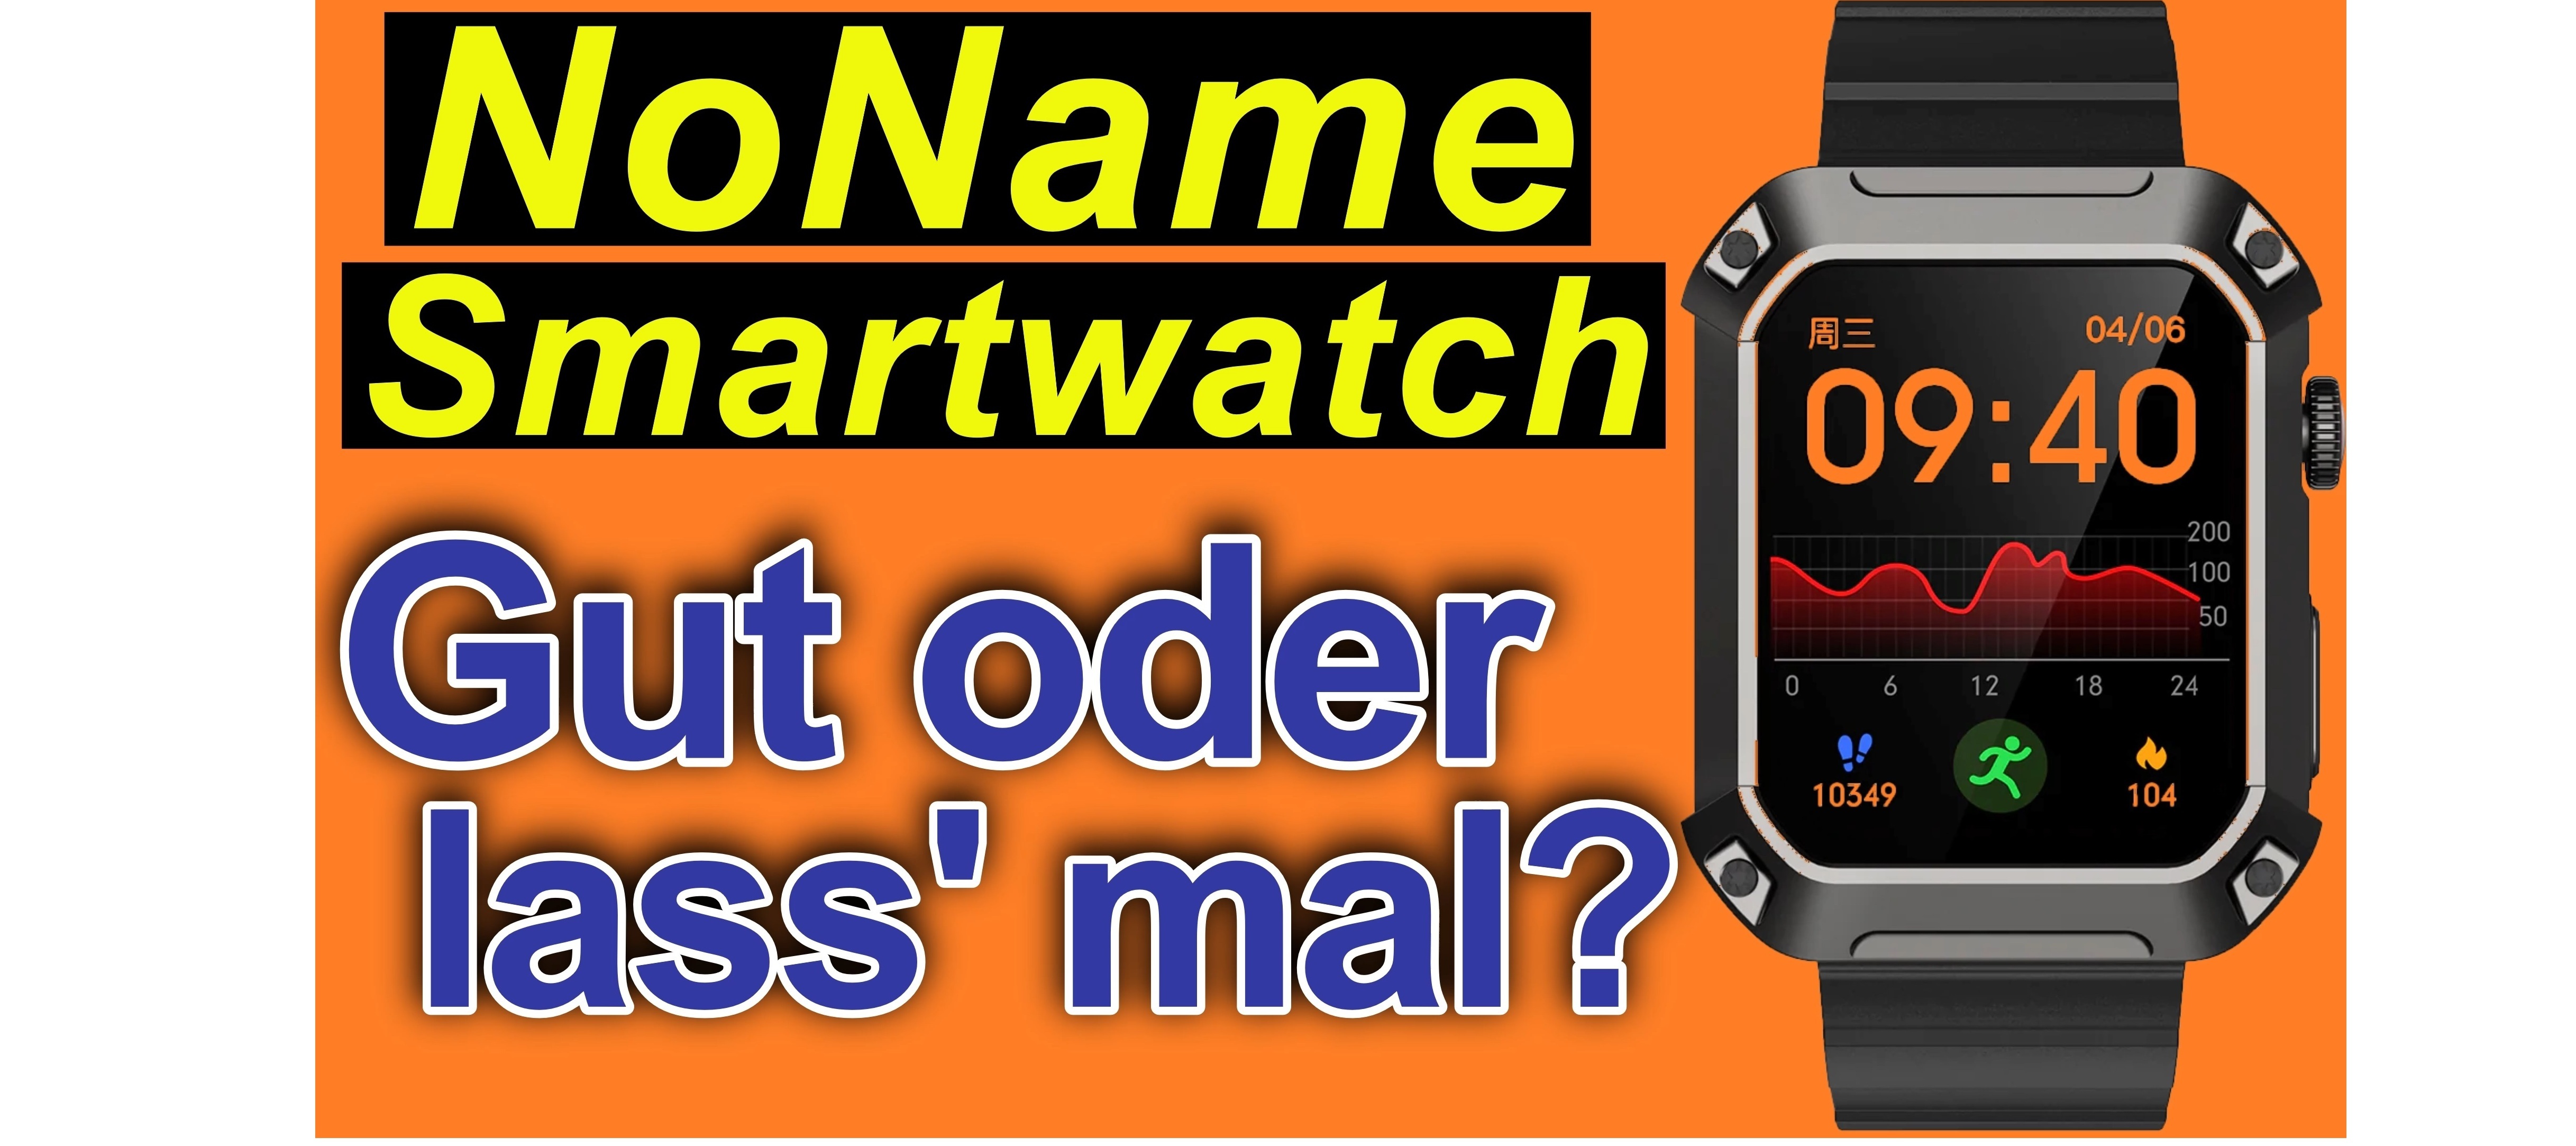 Wie gut ist eine NoName Smartwatch? (Rogbid S2)